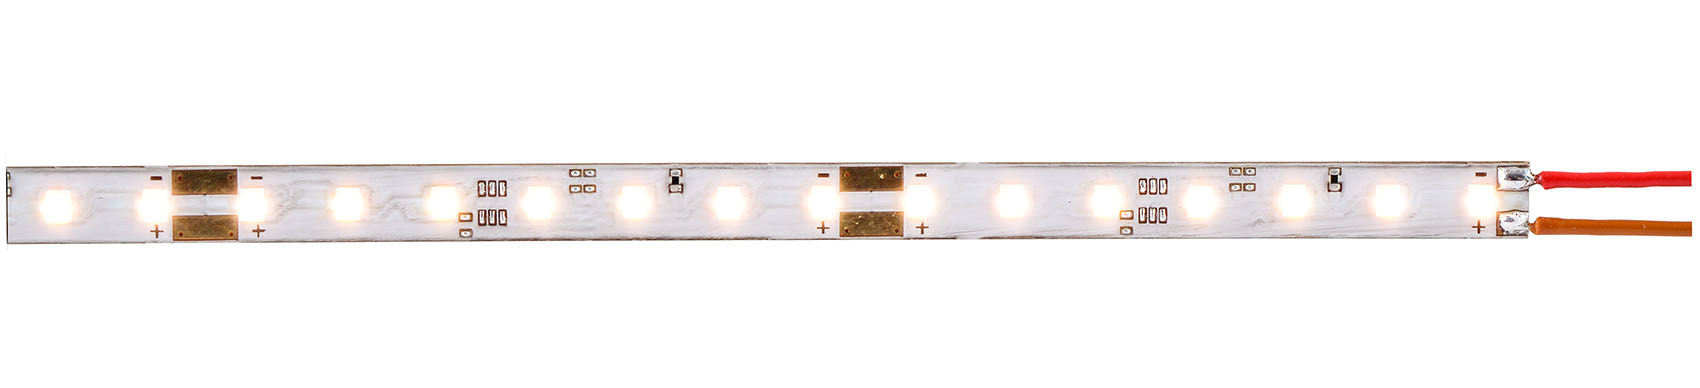 LED-Leuchtstreifen warmweiß 8mm breit, 2000K, superschmal, geeignet zur filigranen Beleuchtung von Reklameschildern, Tankstellendächern, usw.